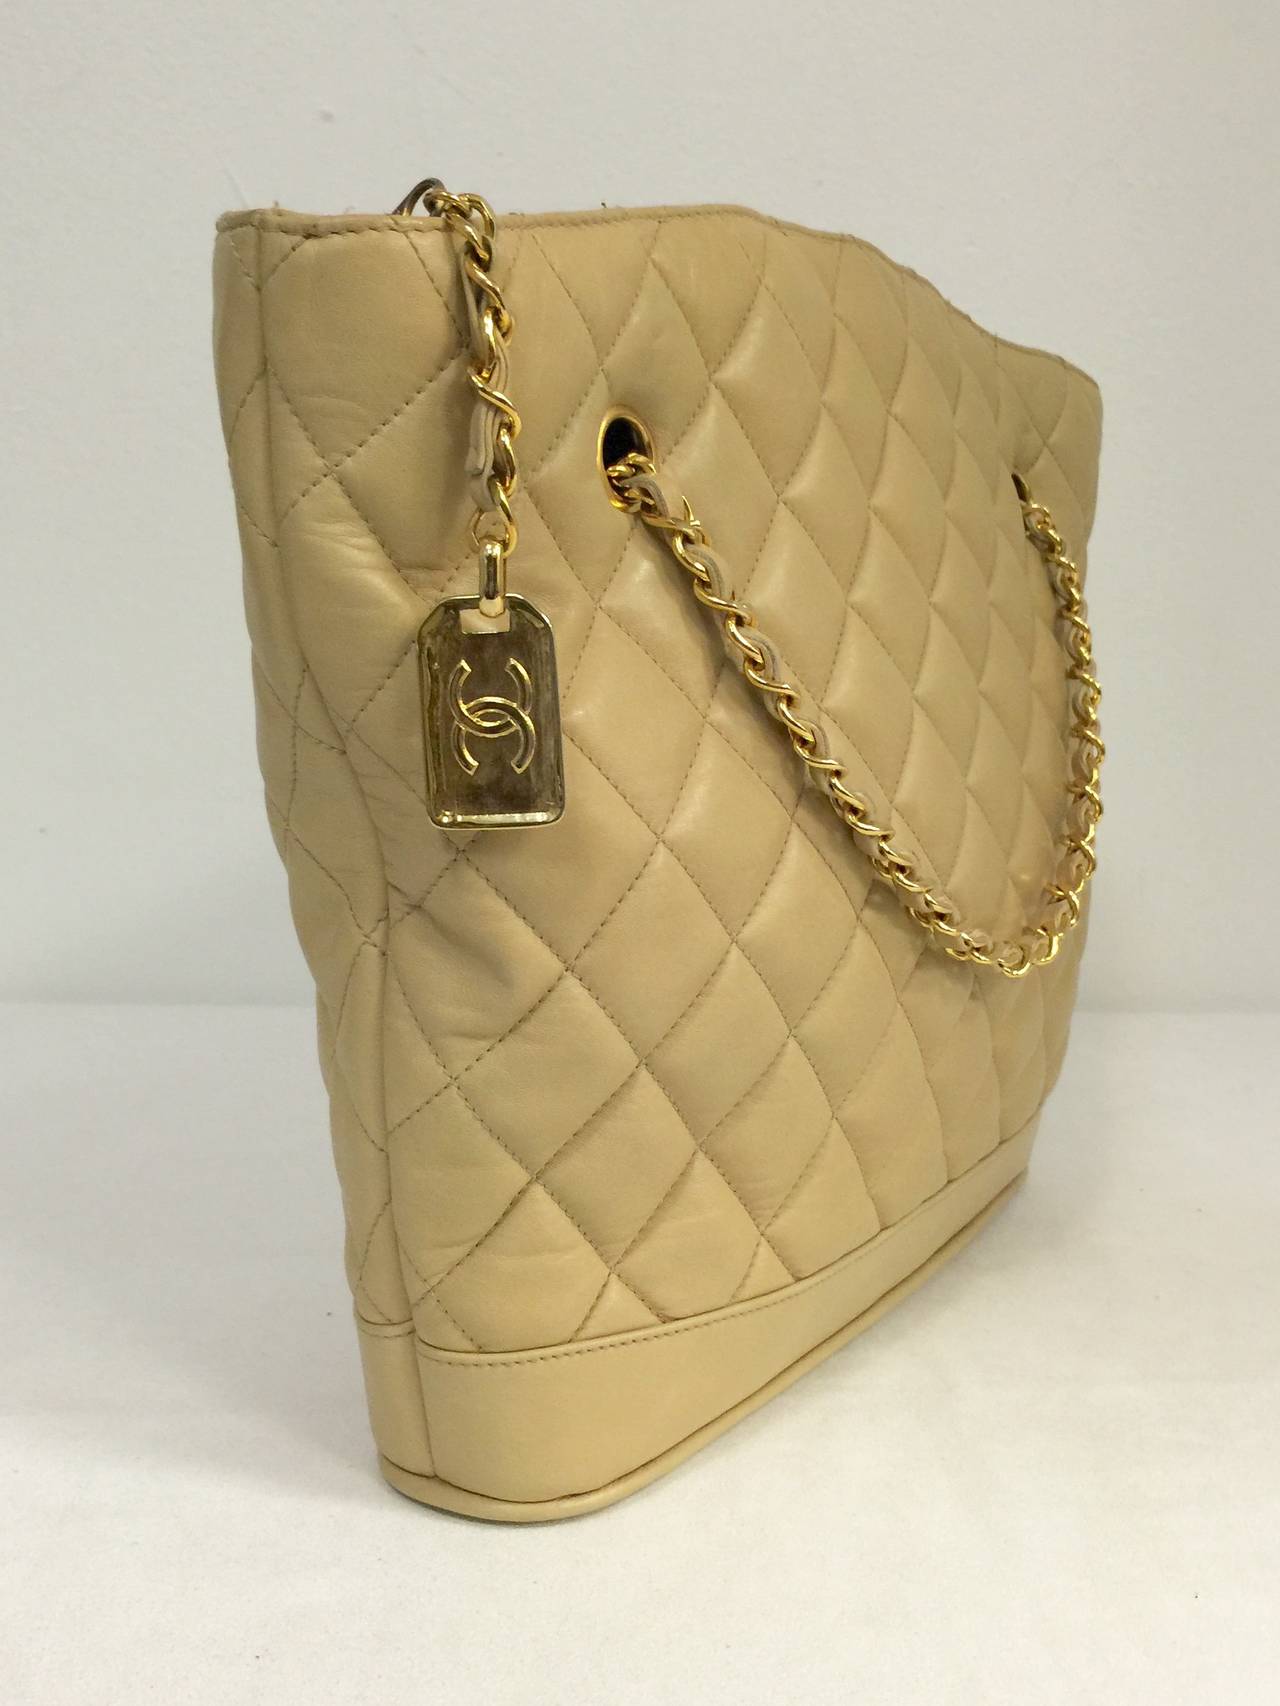 Vintage Chanel Tan Quilted Lambskin Shoulder Bag Serial Number 1079329 at 1stdibs